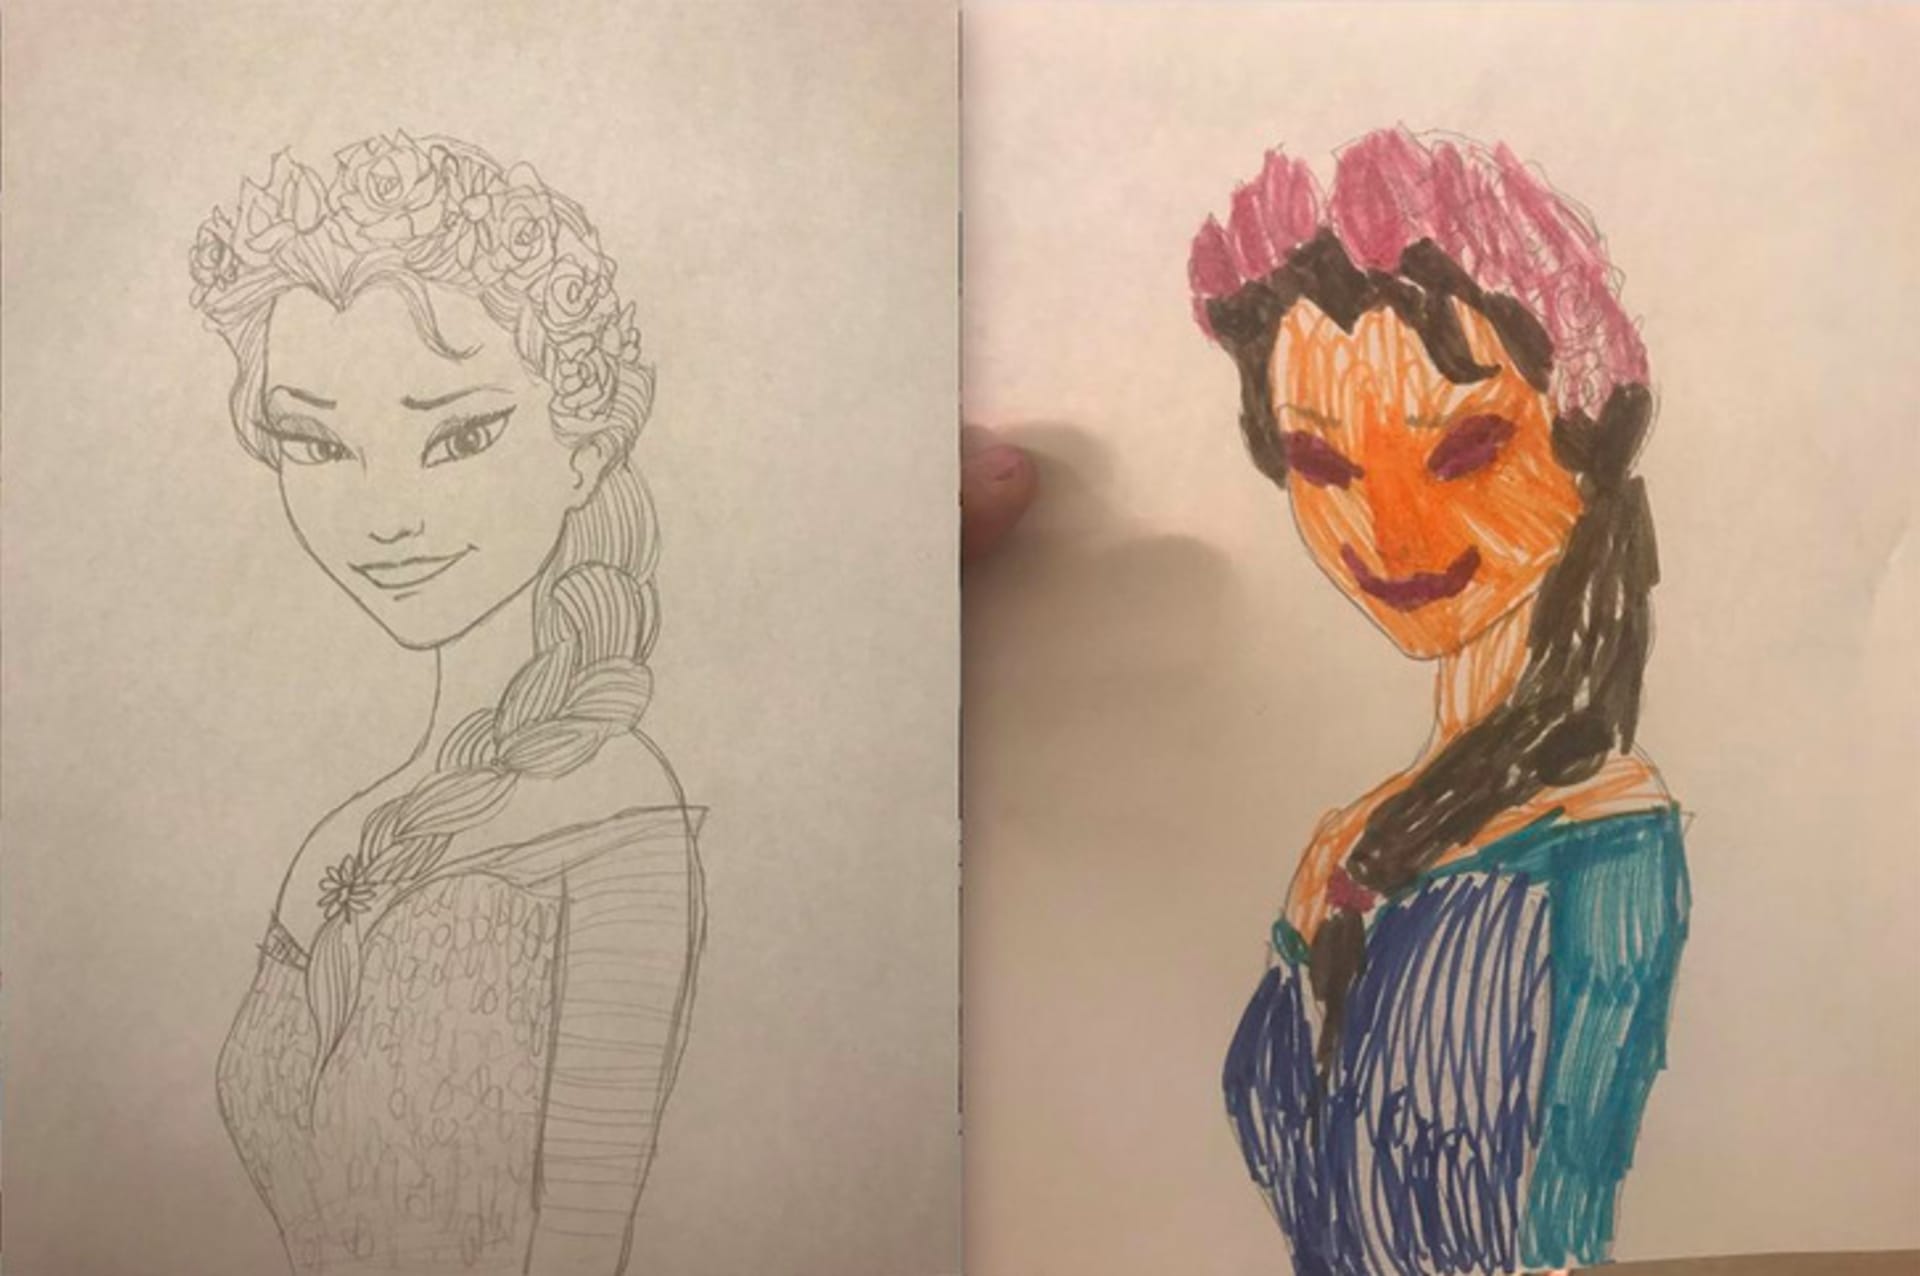 "Moje čtyřletá dcera chtěla nakreslit Elsu, aby jí mohla vybarvit."